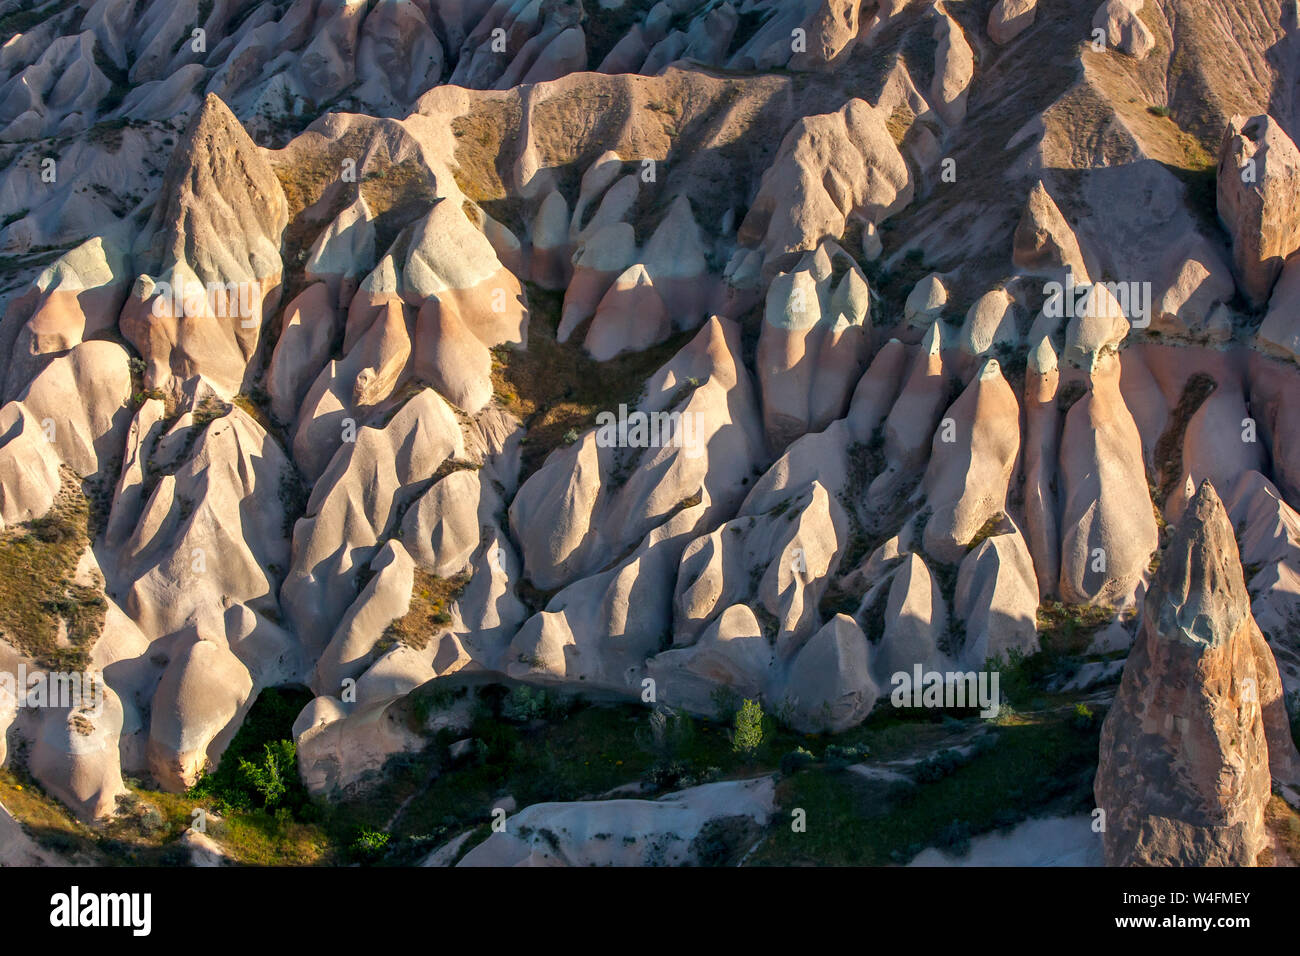 Coloridas formaciones rocosas situadas en la ladera de una colina cerca de Goreme, en la región de Cappadocia de Turquía. Eventualmente estas formaciones se convertirá en chimeneas de hadas Foto de stock